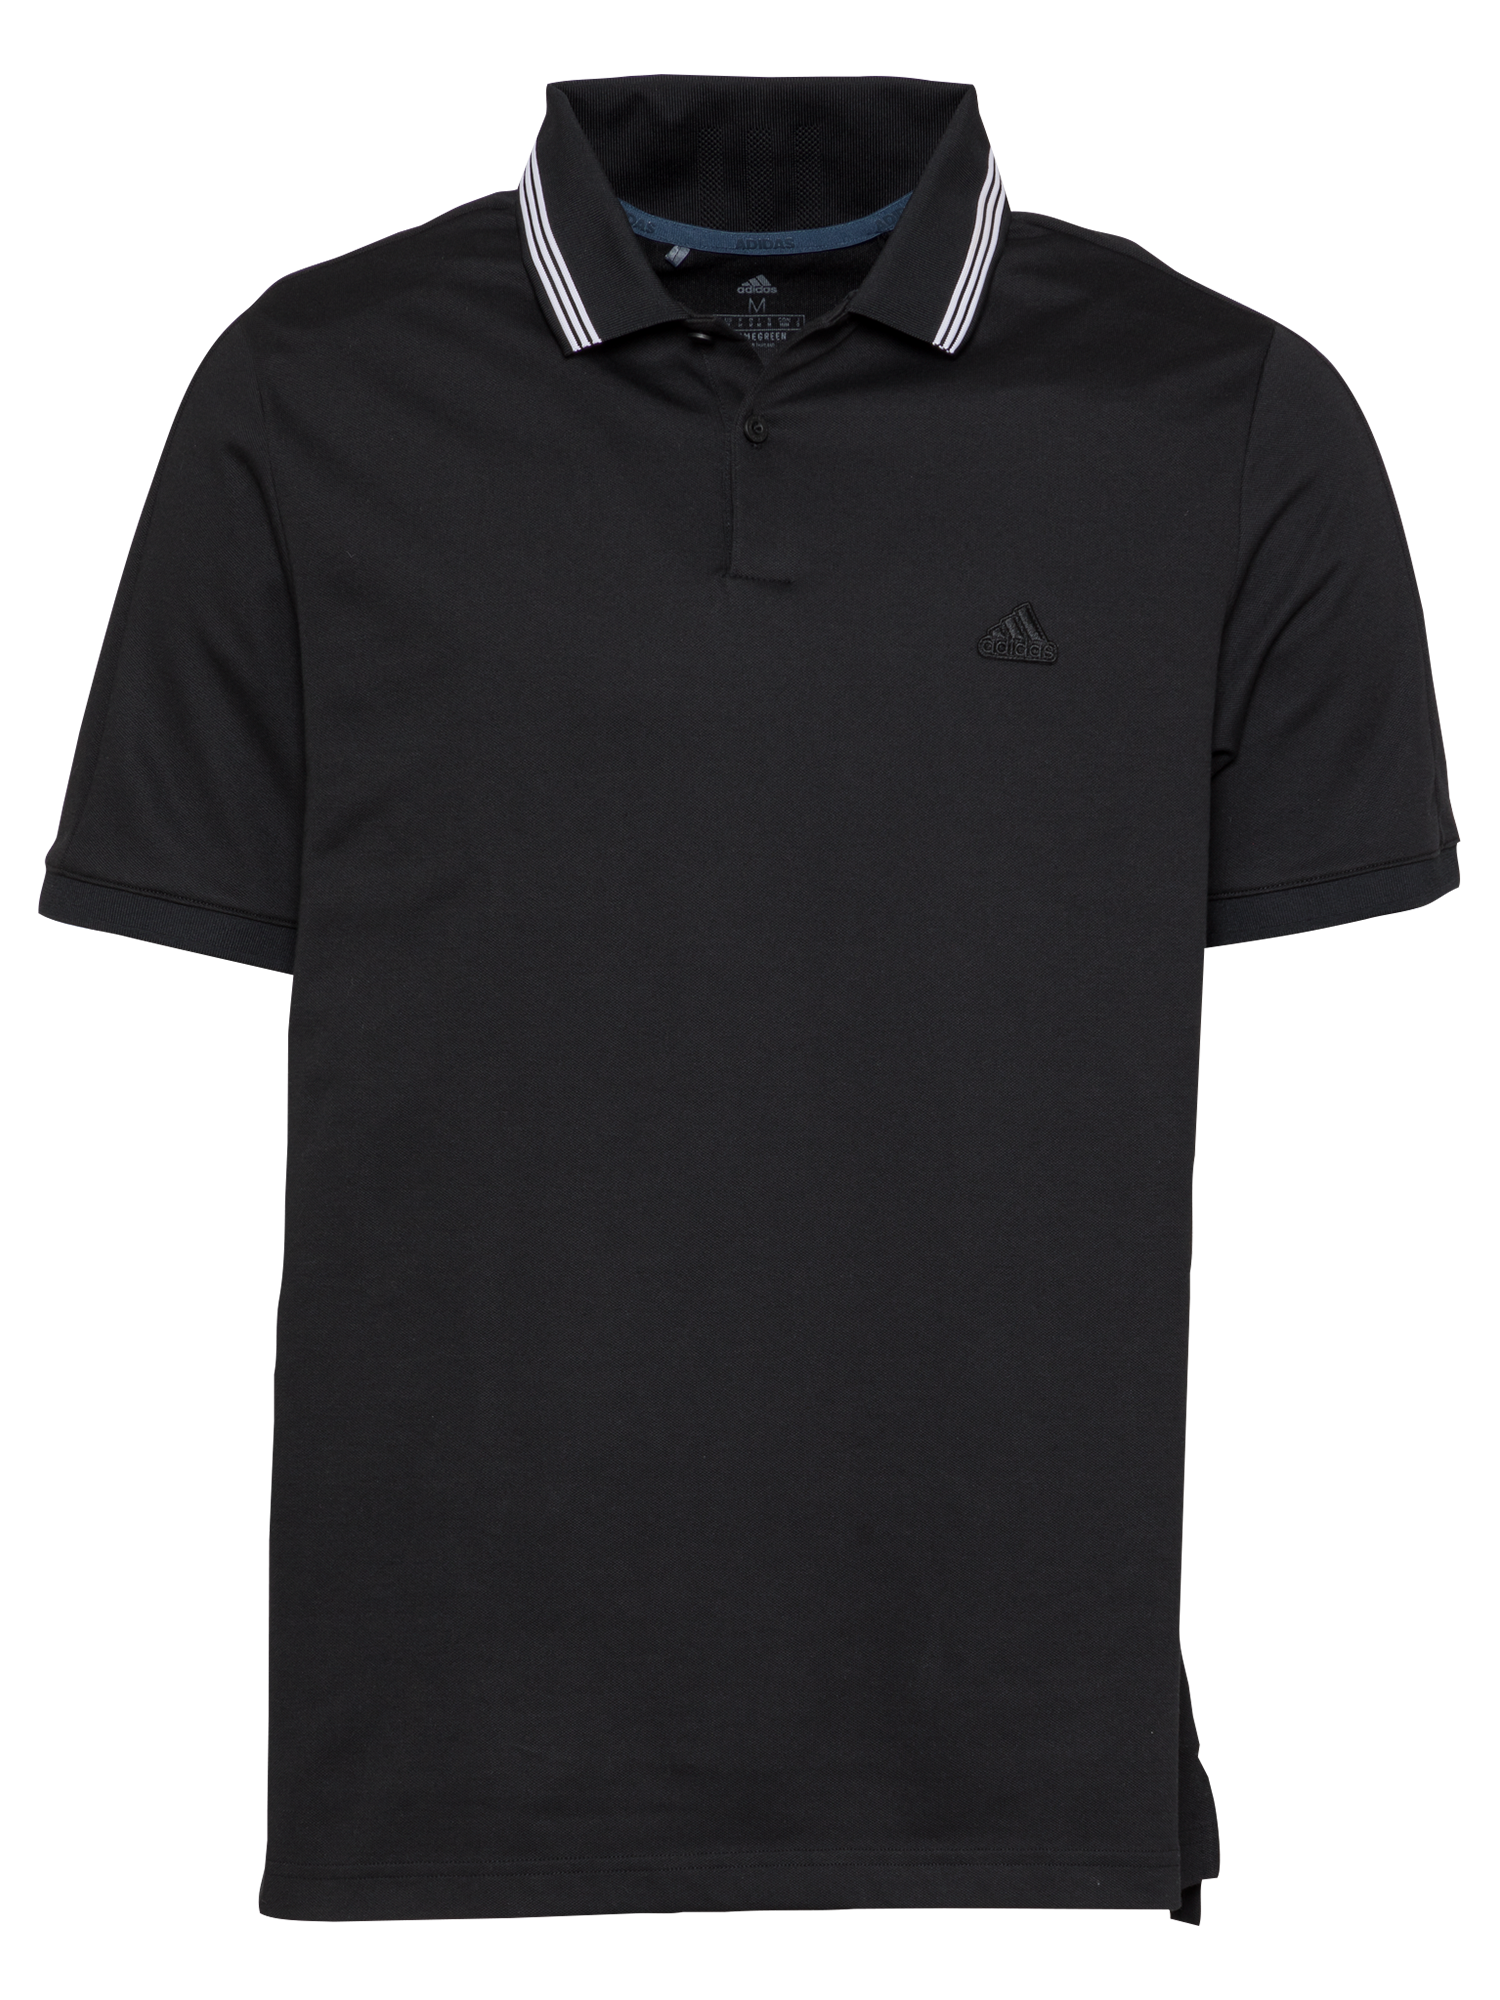 Sport cyAcM adidas Golf Koszulka funkcyjna GO-TO w kolorze Czarnym 